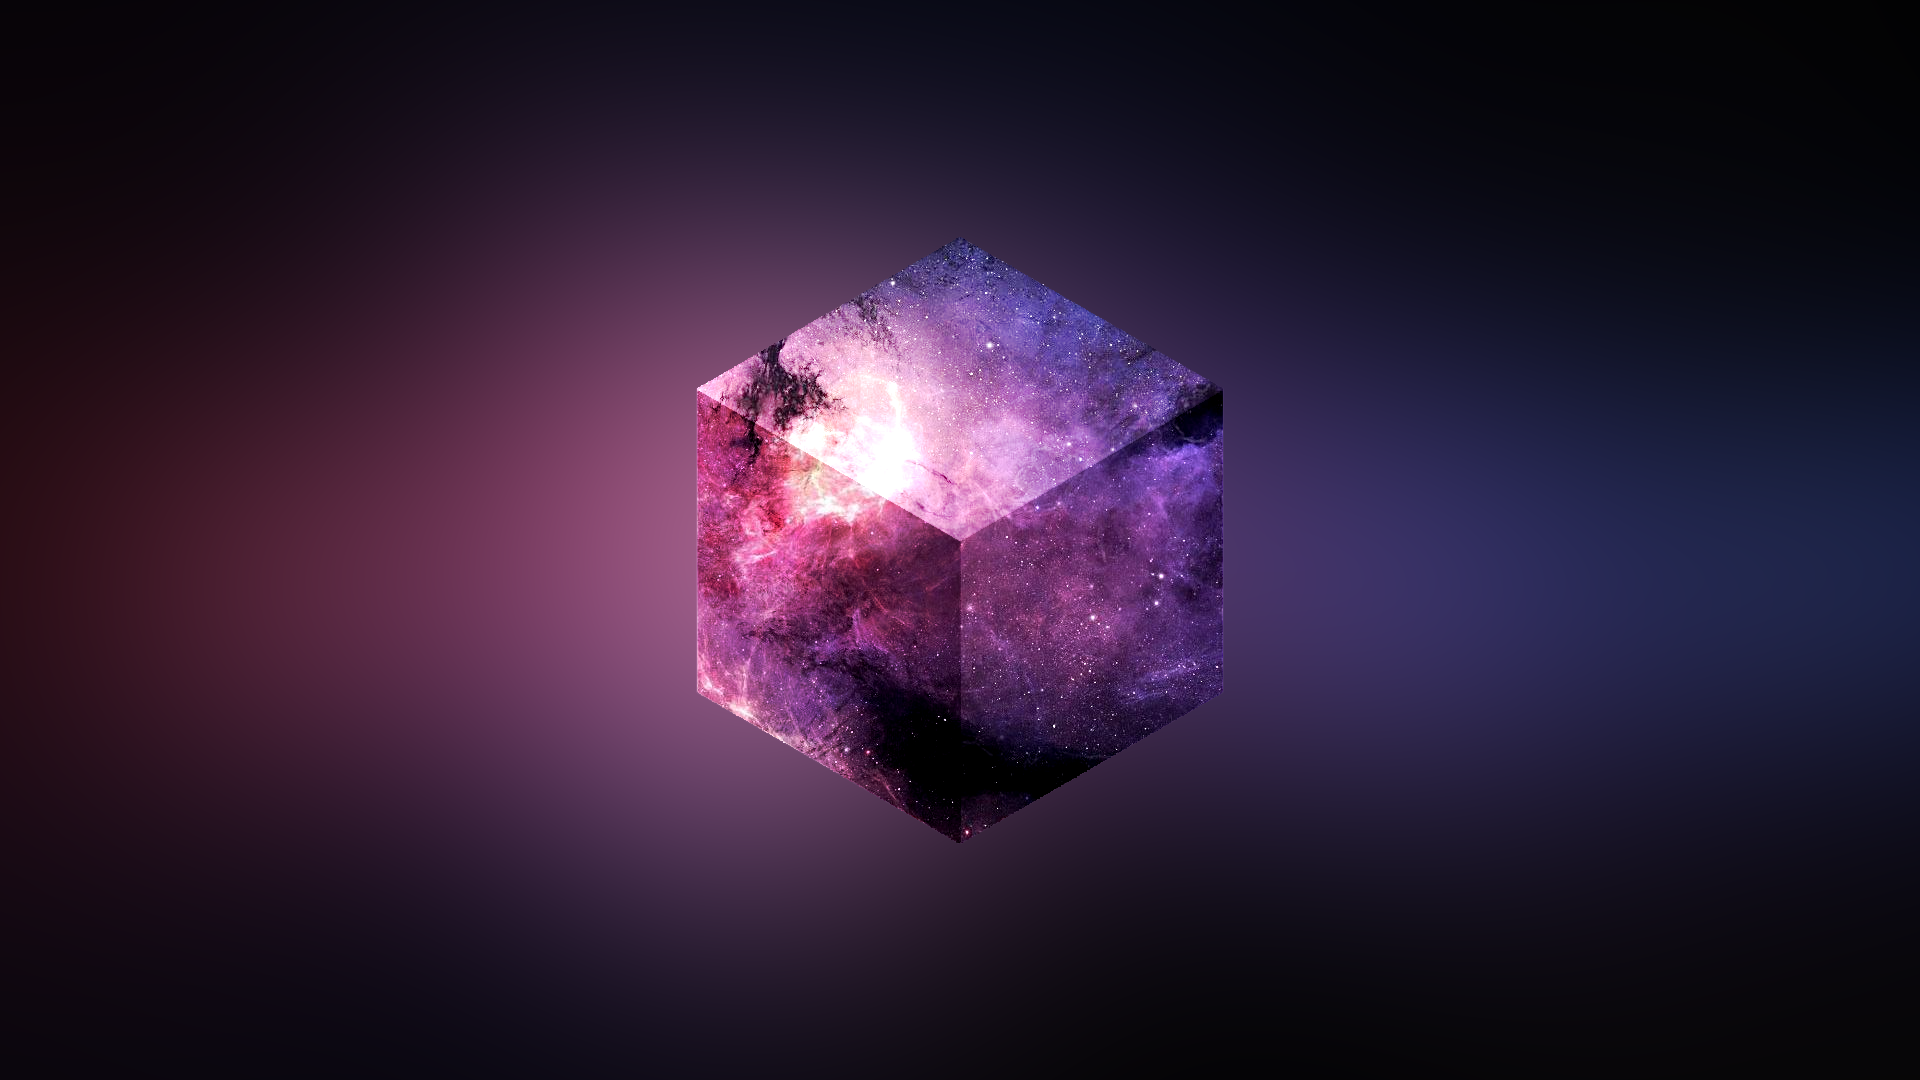 Galaxcube I